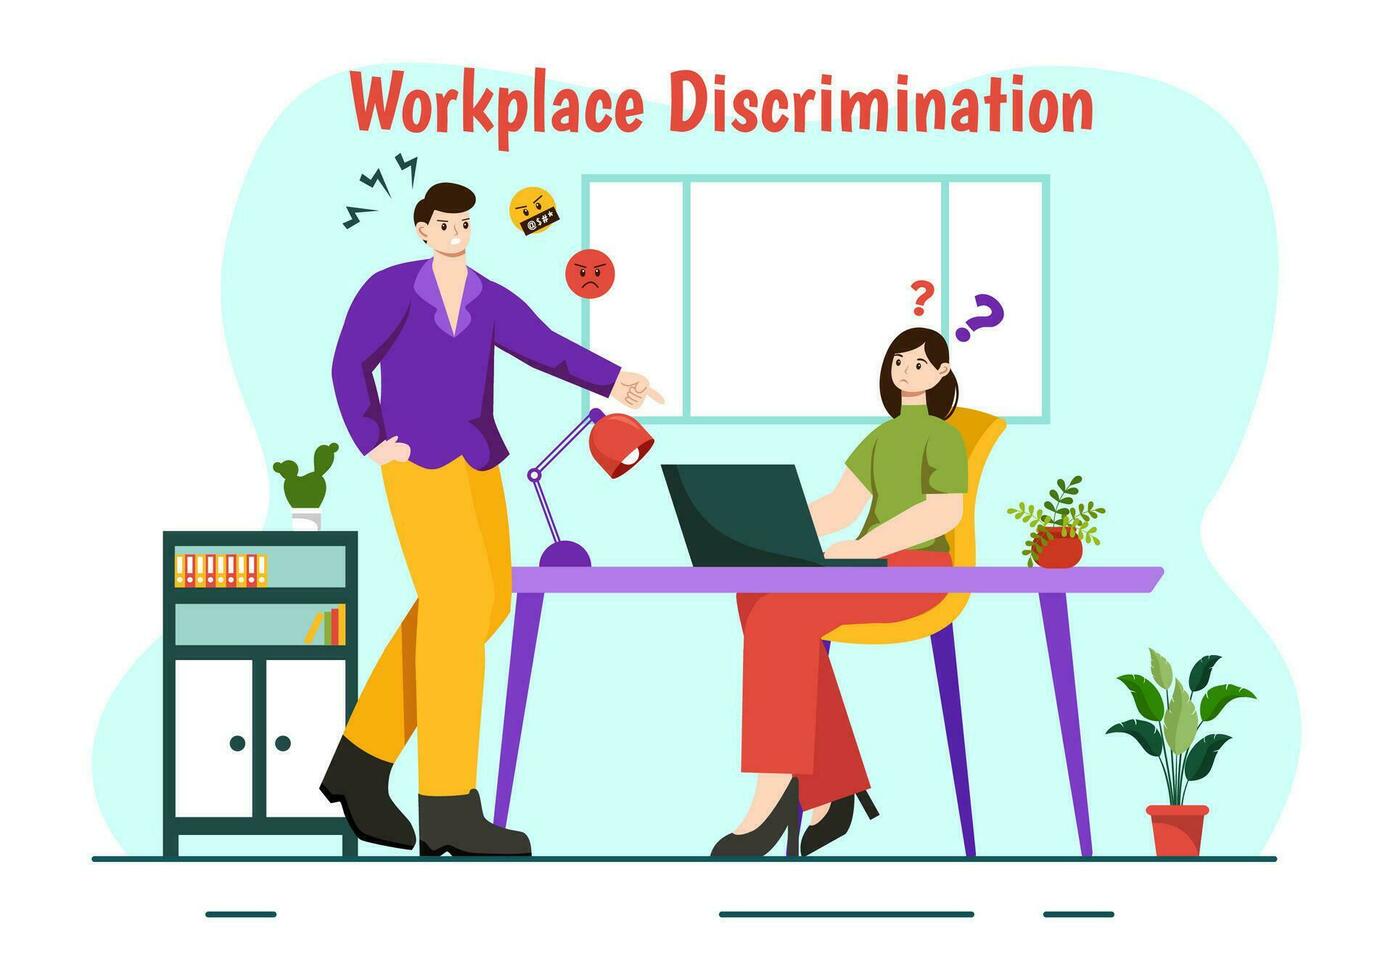 arbetsplats diskriminering vektor design illustration av anställd med sexuell trakasserier och Inaktiverad person för likvärdig sysselsättning möjlighet